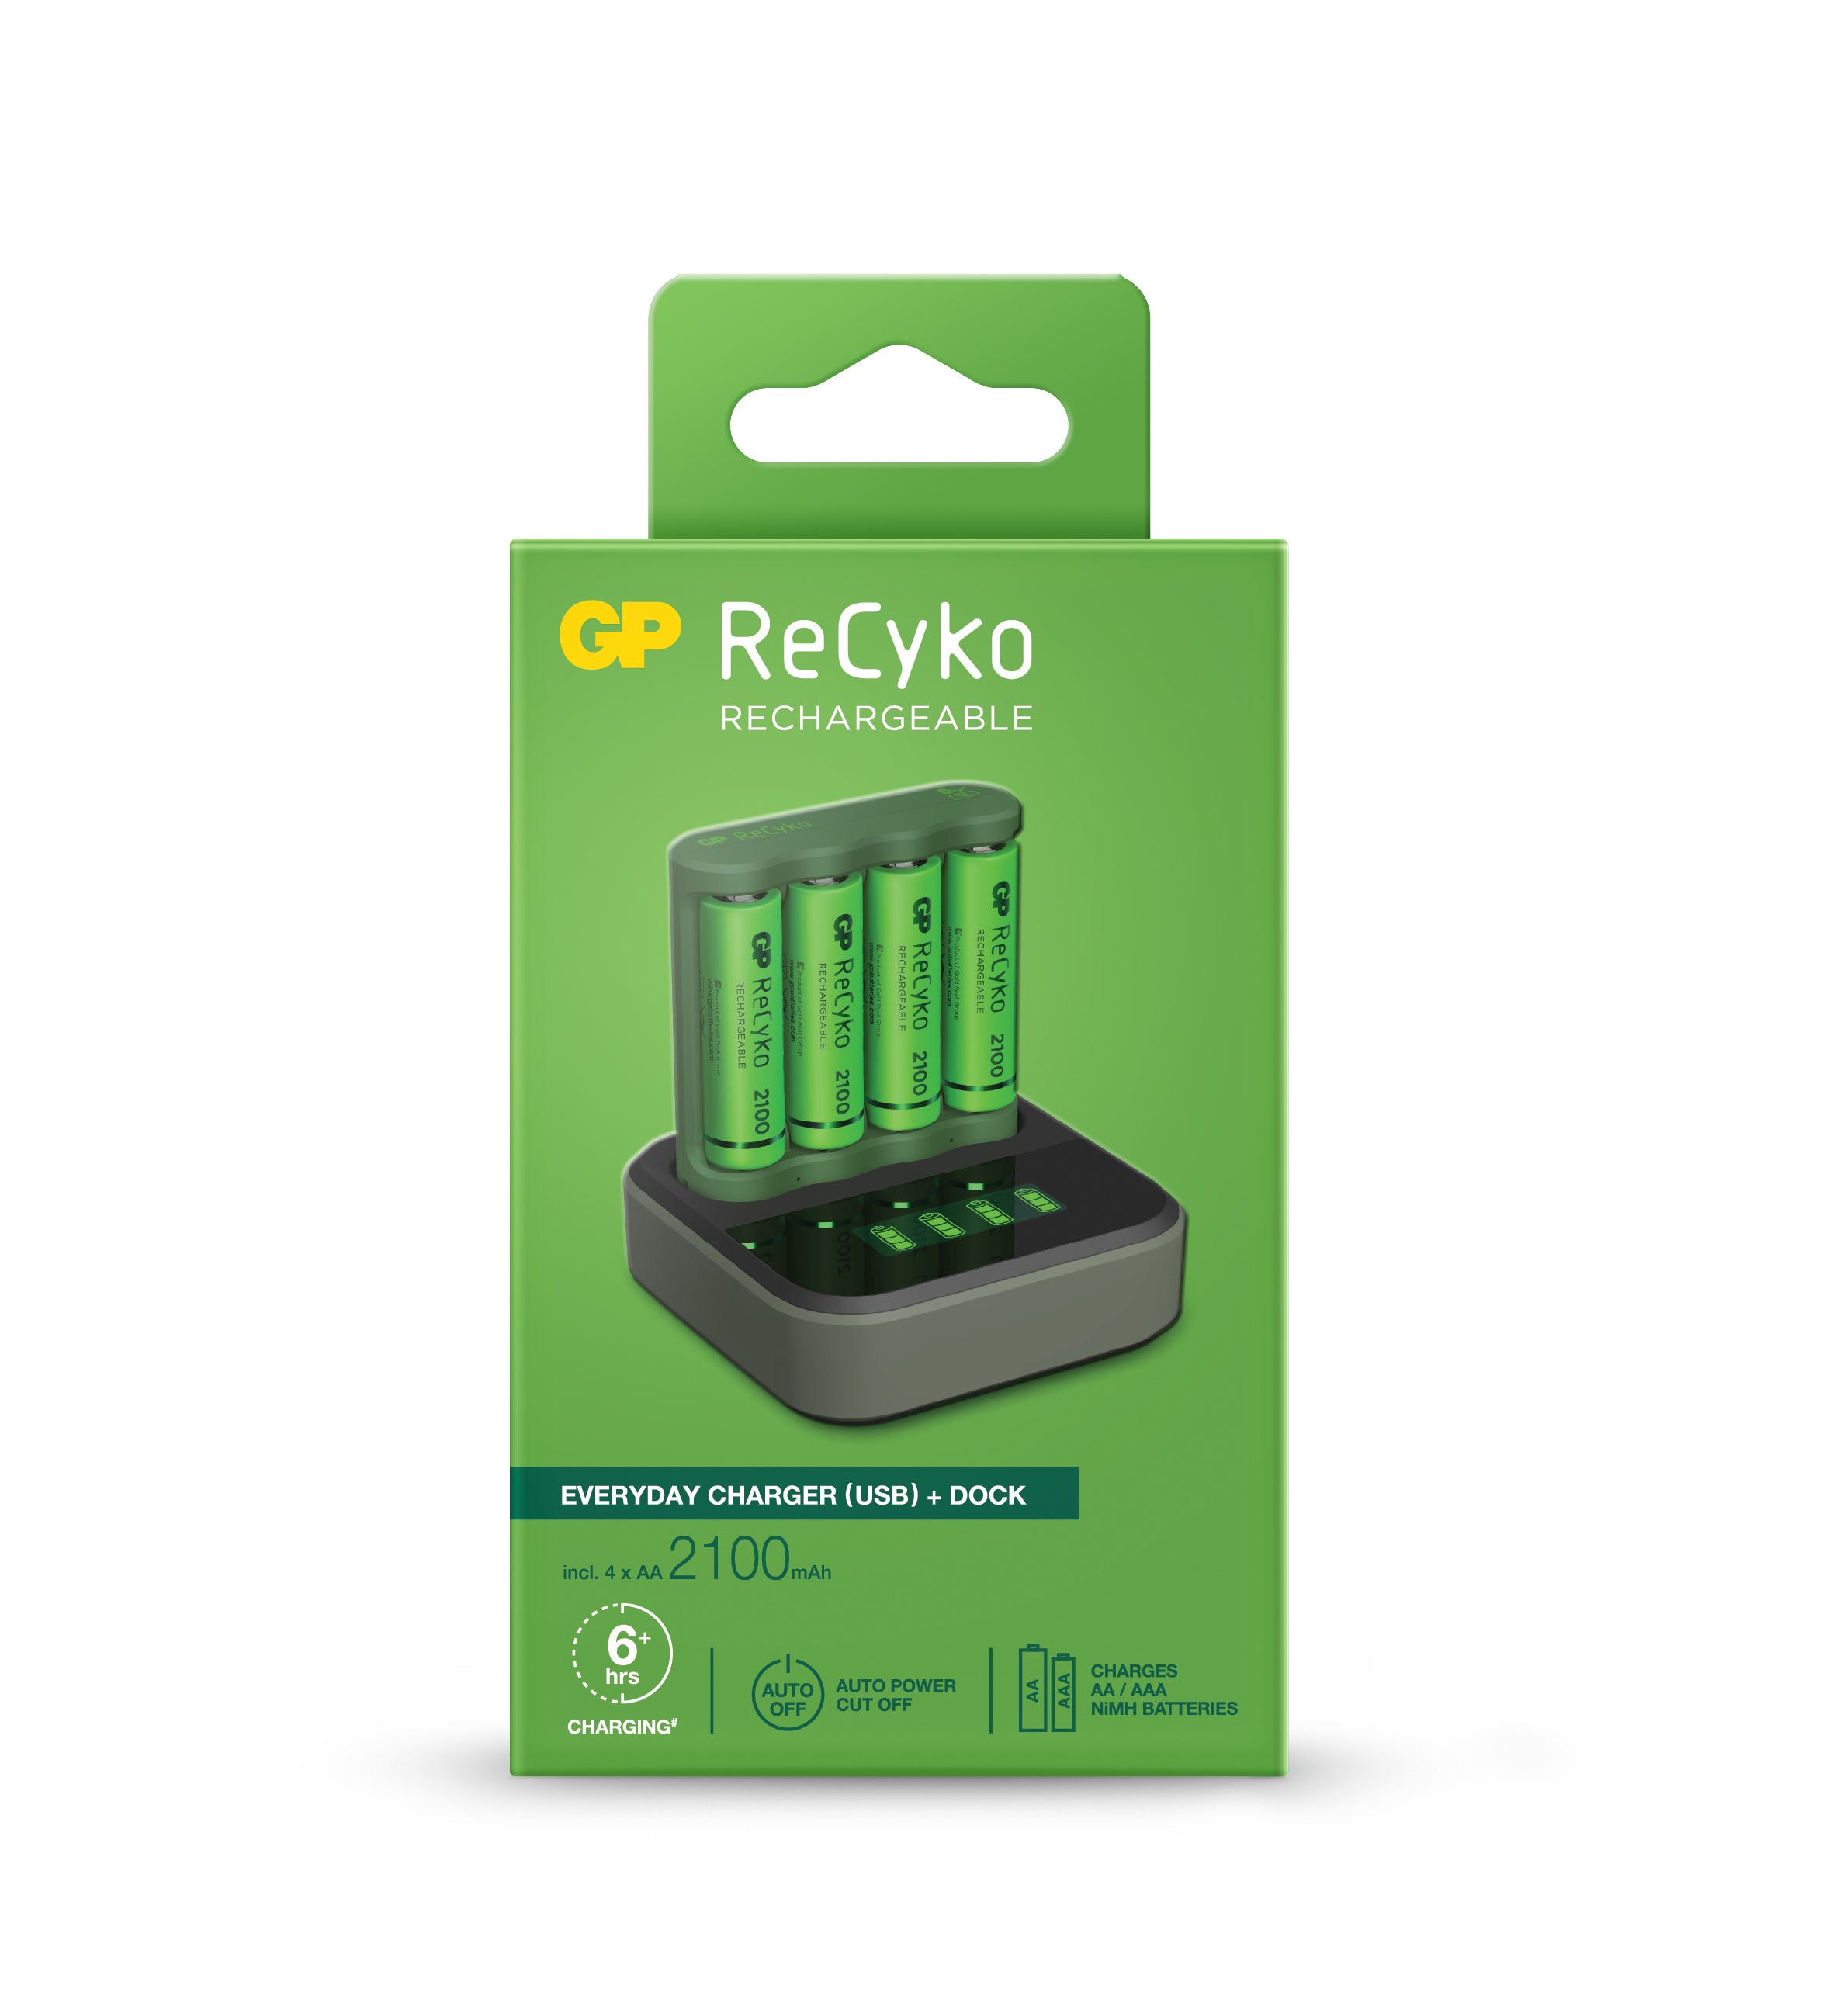 Pack Chargeur Dock GP ReCyko B421 Quotidien USB 4 Espaces + Base de Recharge + 4 Piles AA 2100mAh Rechargeables